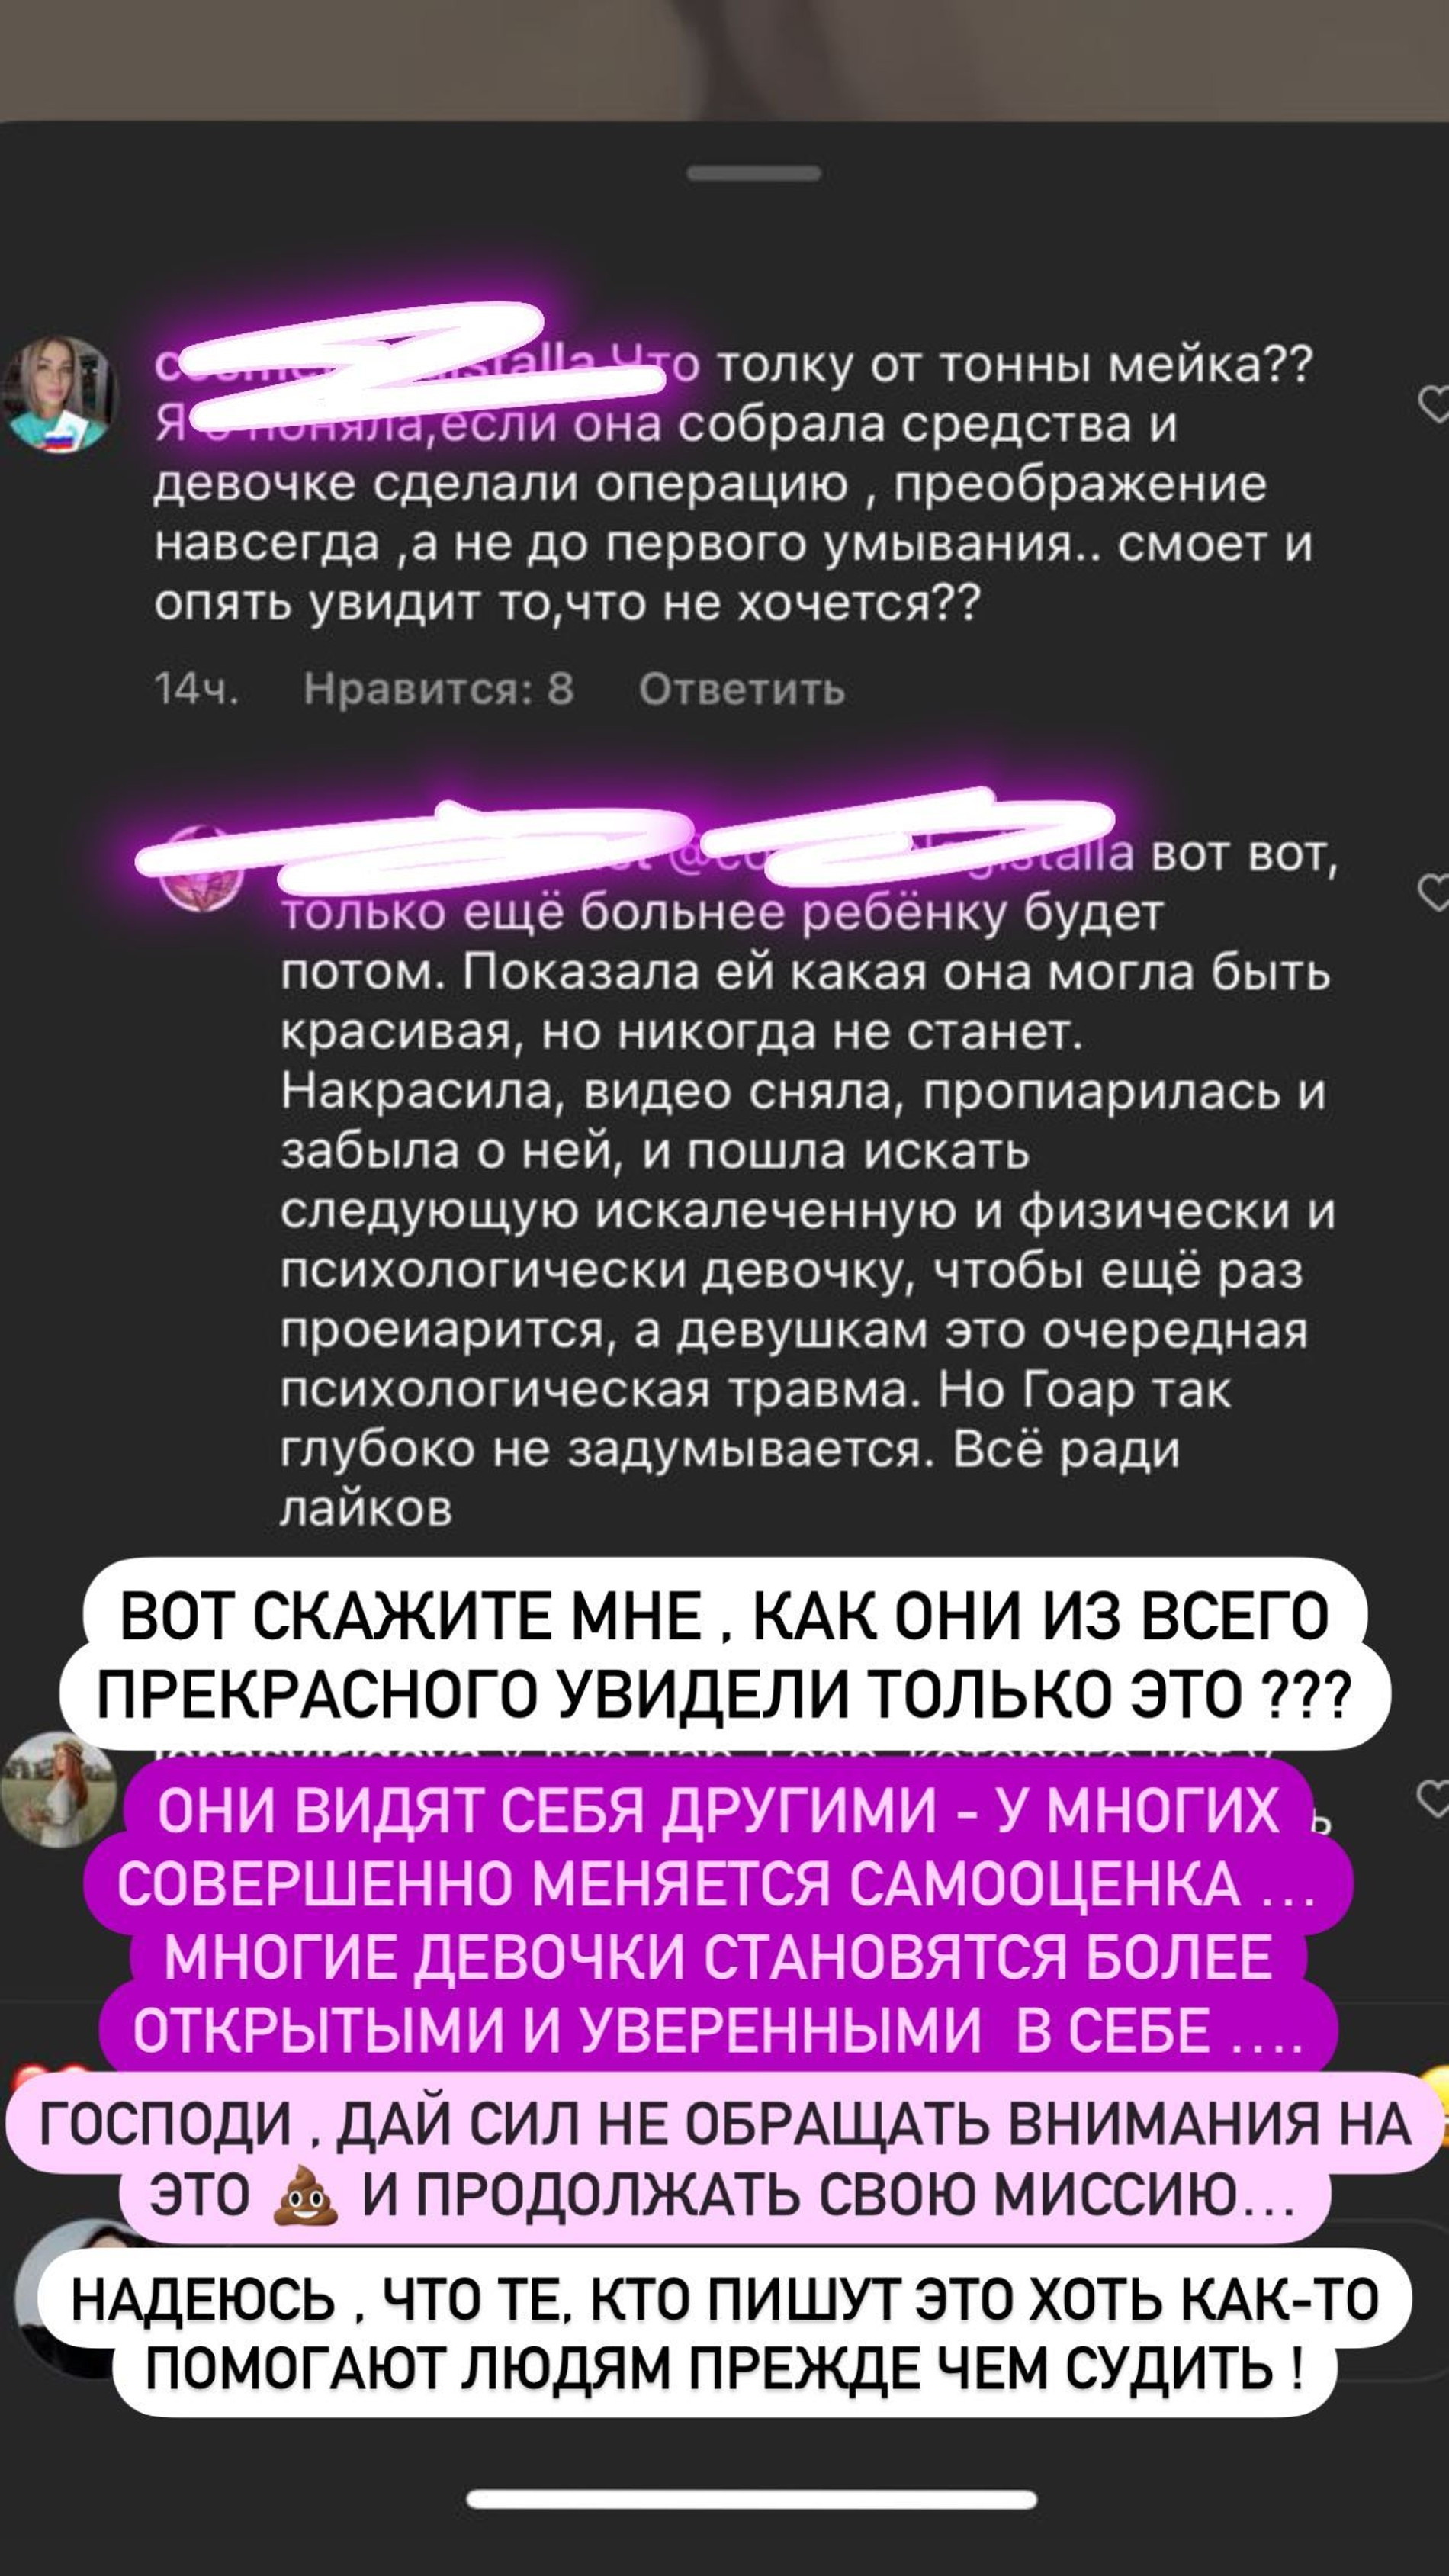 Гоар Аветисян отвечает на хейт
Скриншот: Инстаграм (запрещен в РФ)